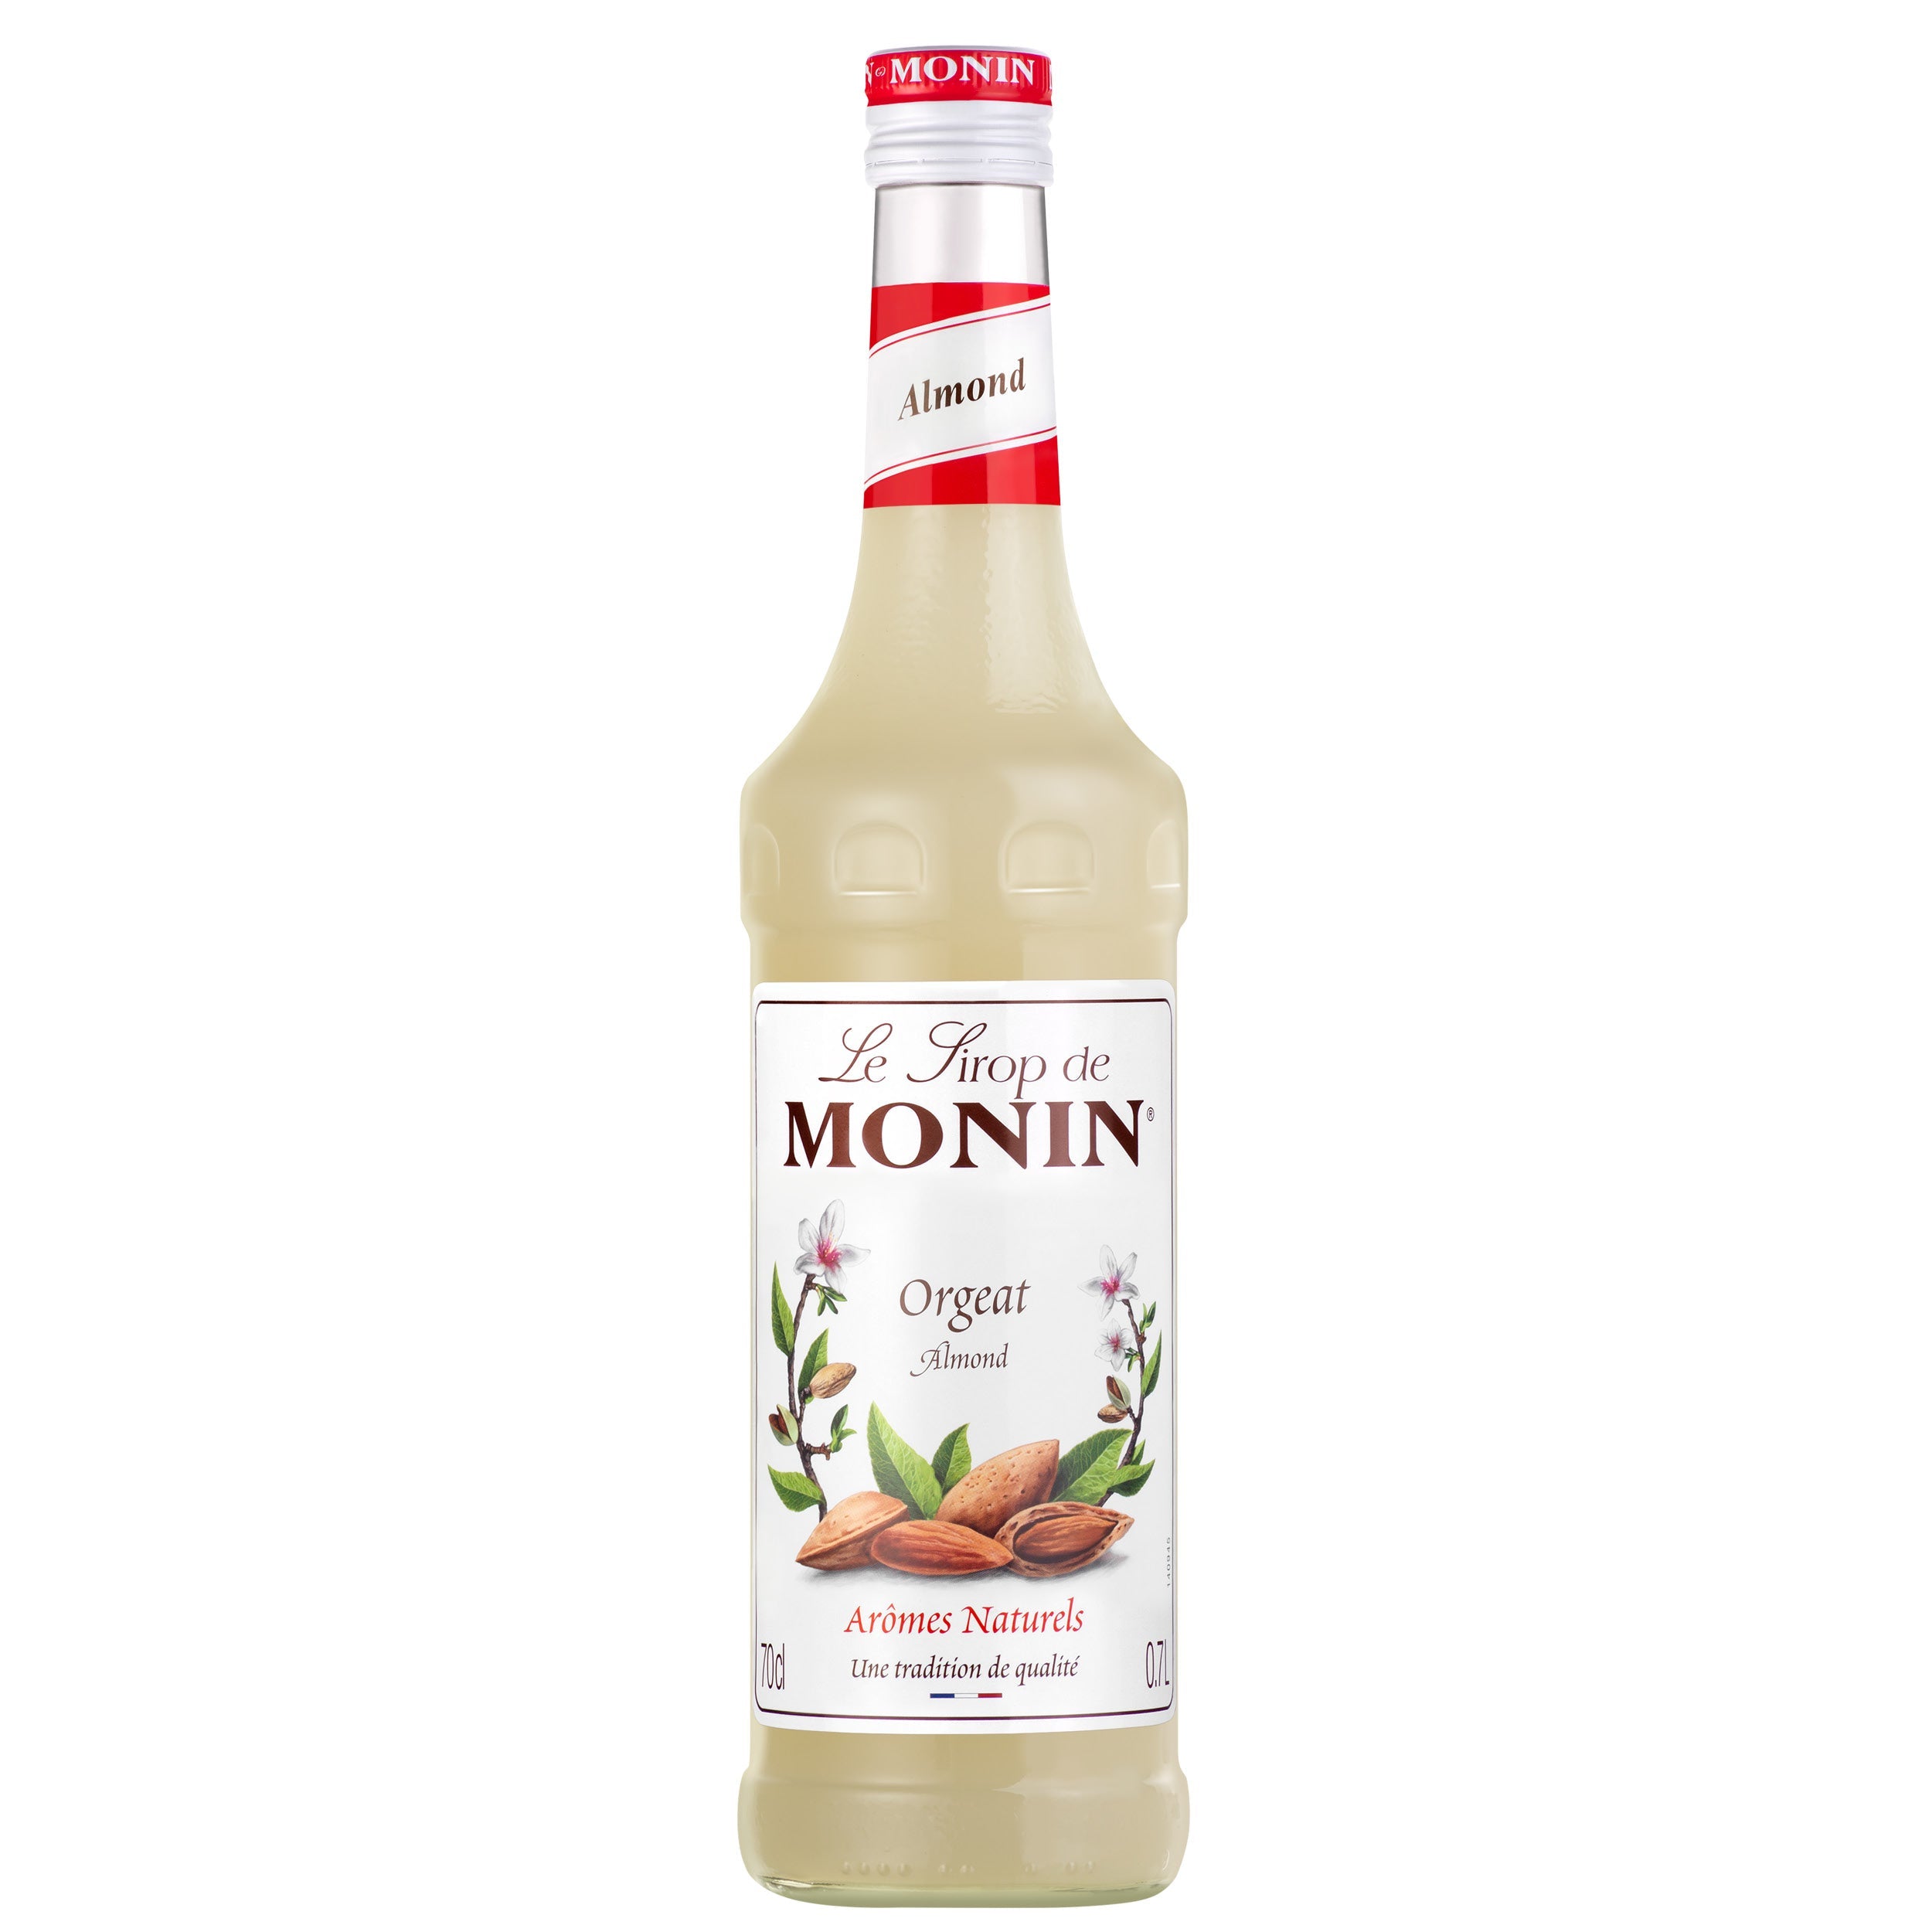 Monin Mojito Syrup, 0,70 l